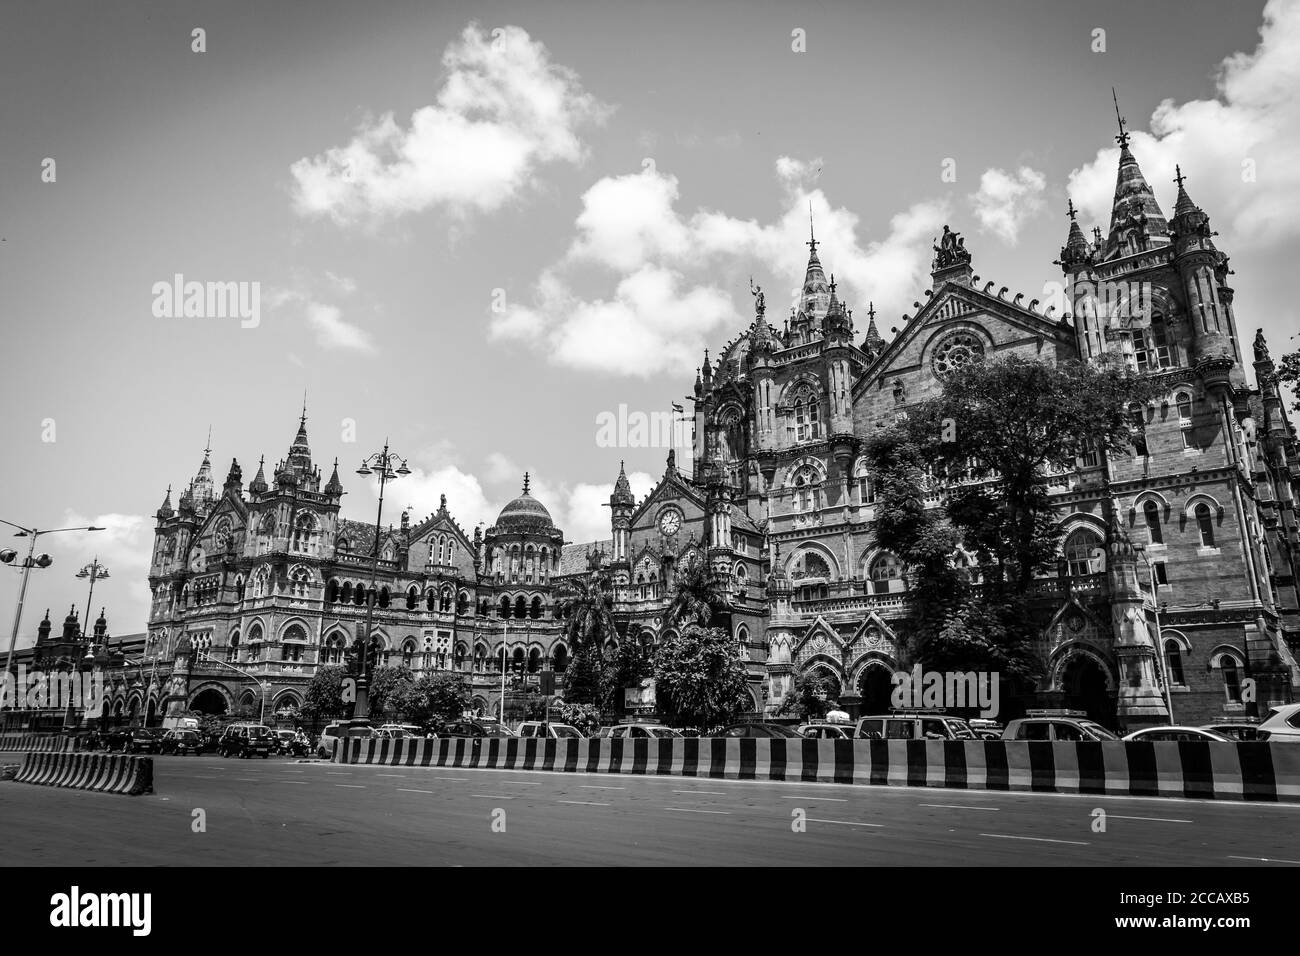 Chhatrapati Shivaji Maharaj Terminus, anciennement connu sous le nom de Victoria Terminus, est une gare ferroviaire historique et un site classé au patrimoine mondial de l'UNESCO. Visite de Bombay. Banque D'Images